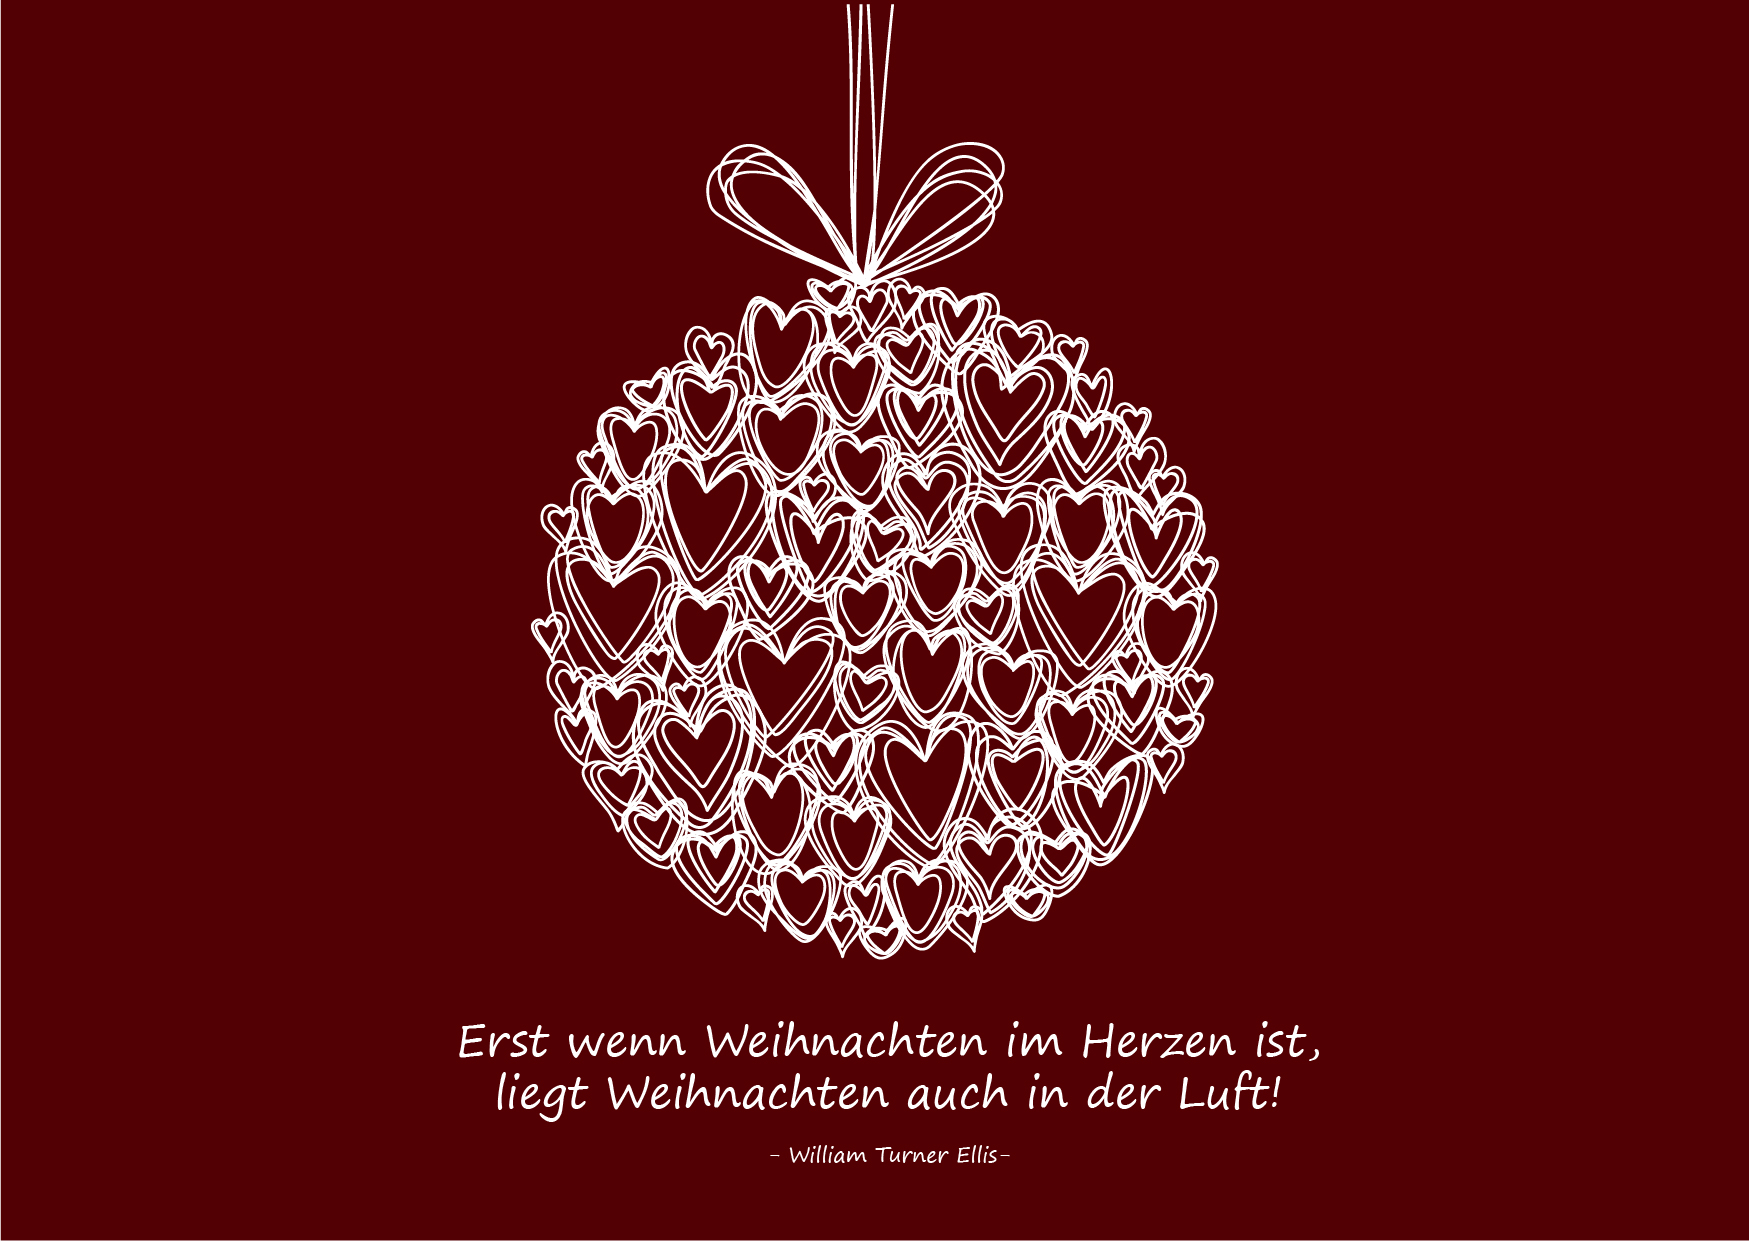 Weihnachtsgrüße als Karte zum Drucken: Zitat "Erst wenn Weihnachten im Herzen ist, liegt Weihnachten auch in der Luft!" (#5)